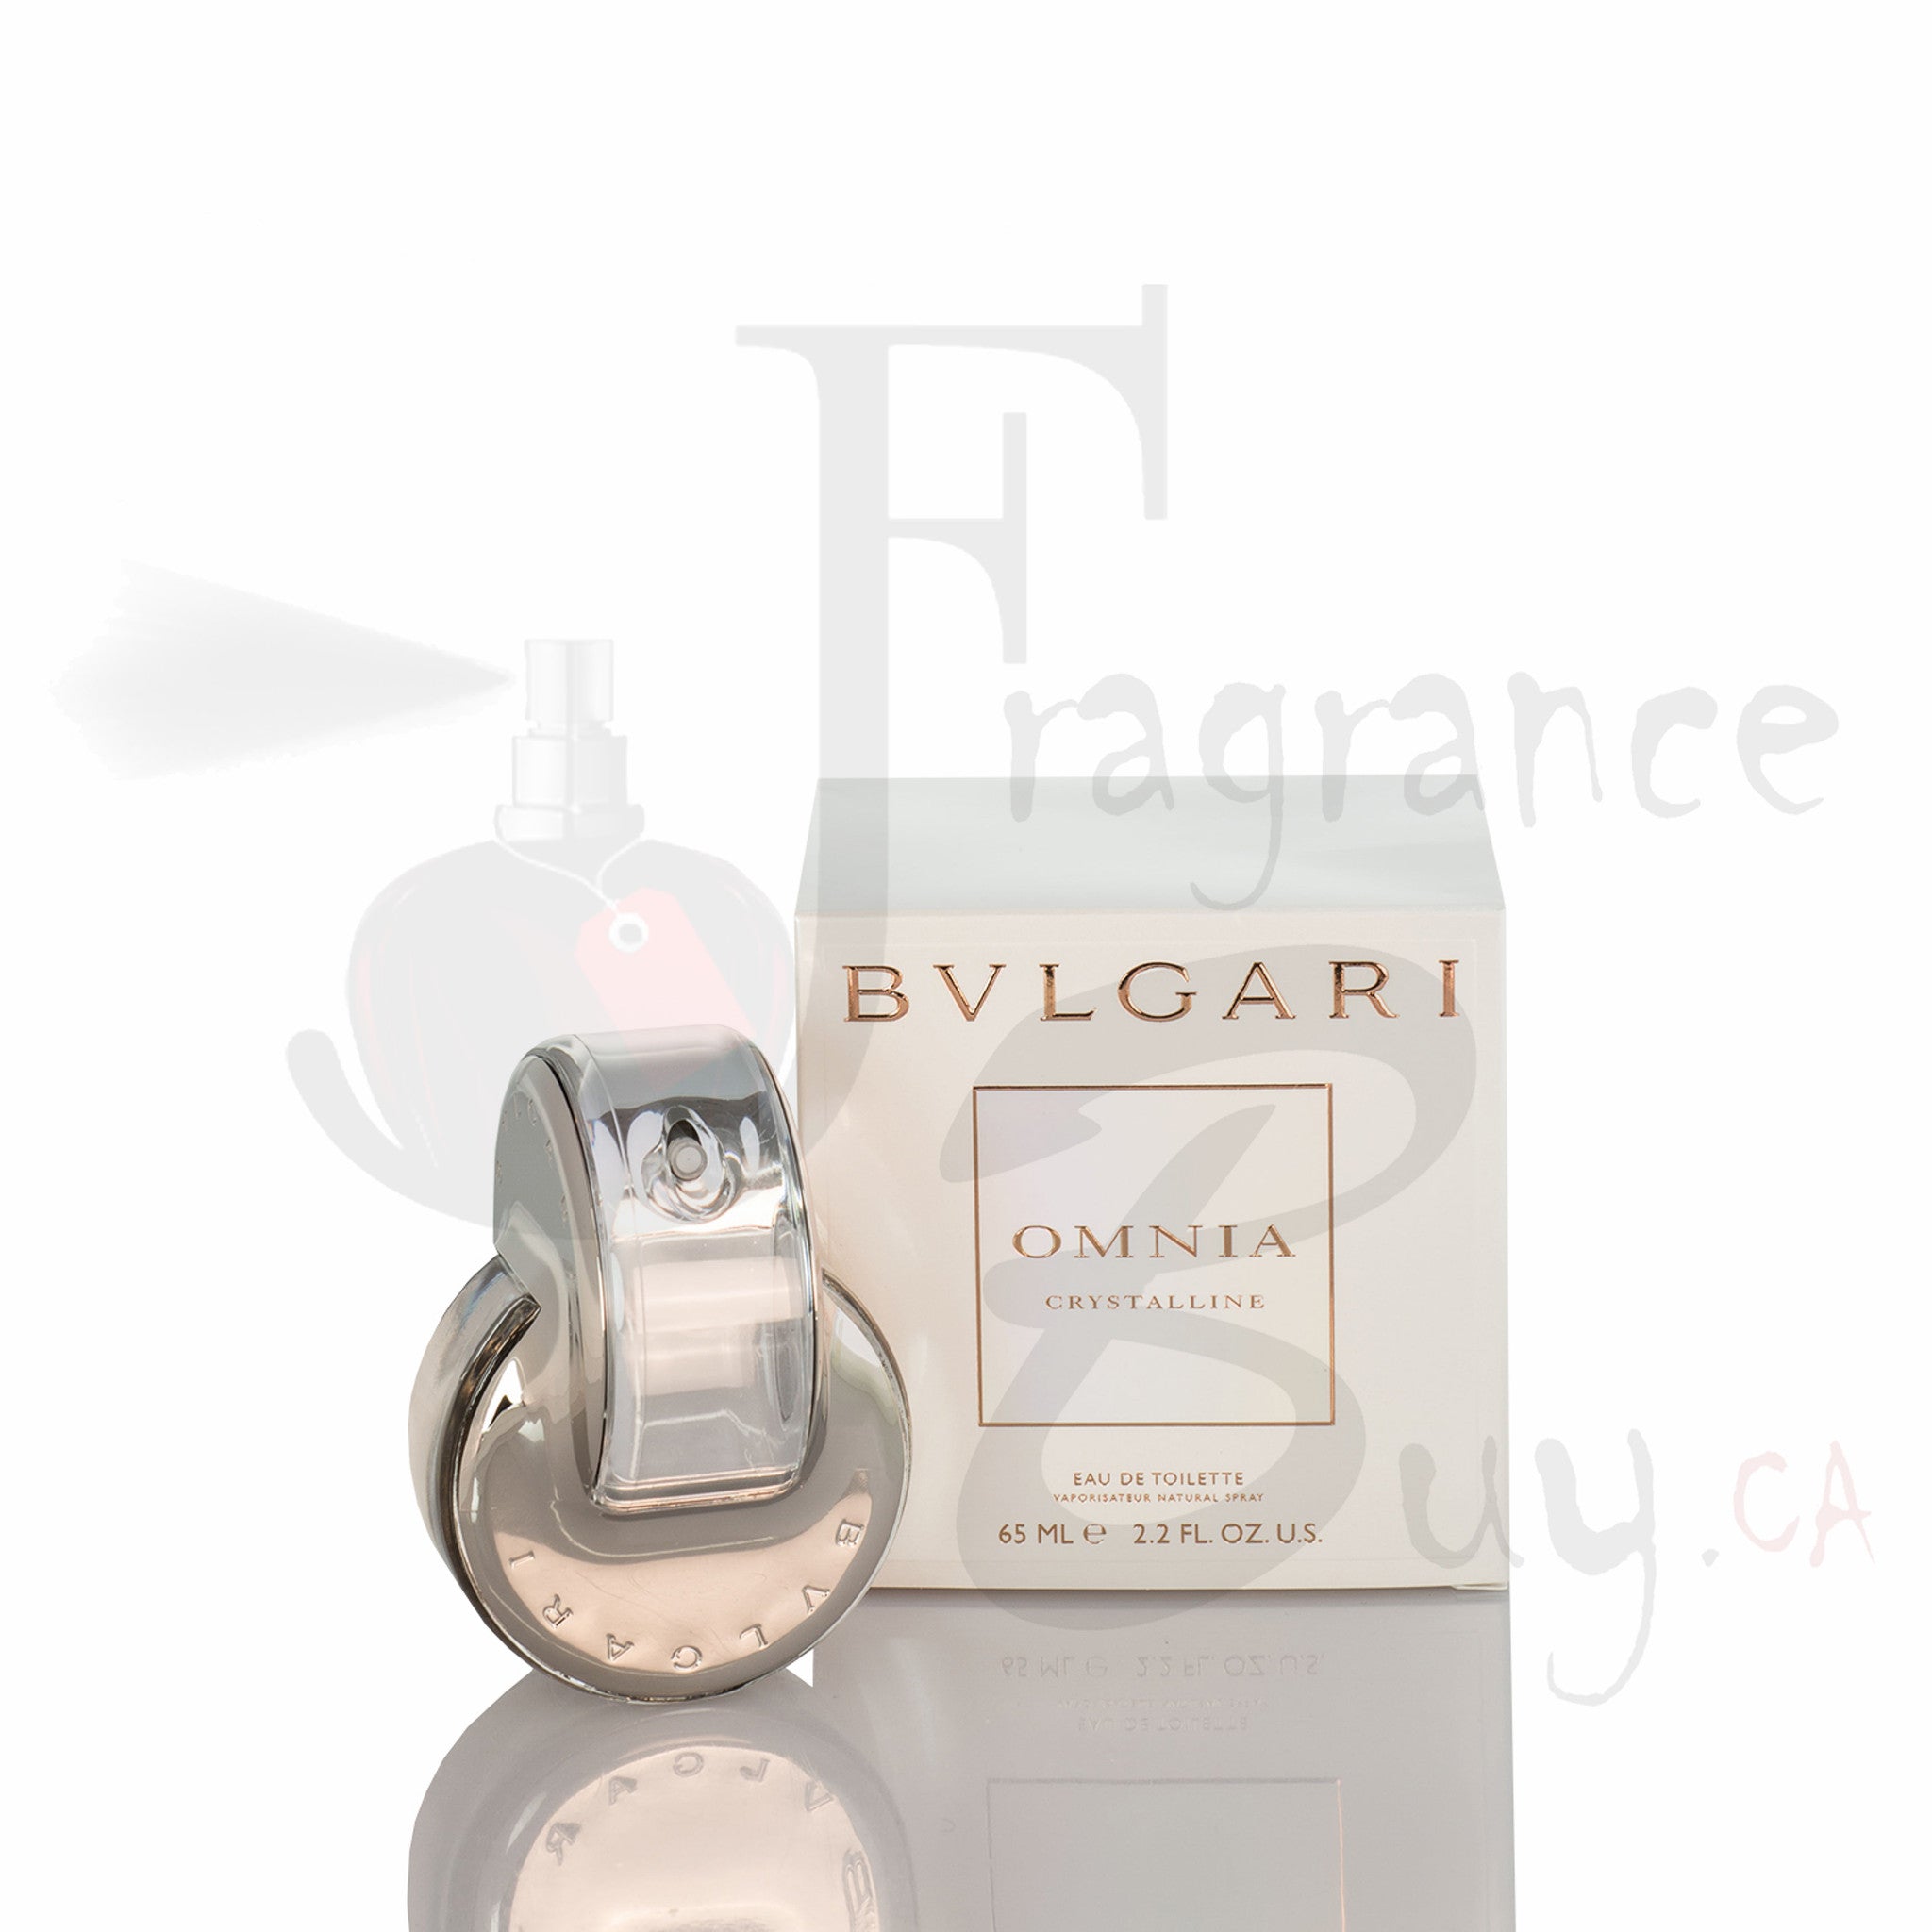 bvlgari perfume price canada